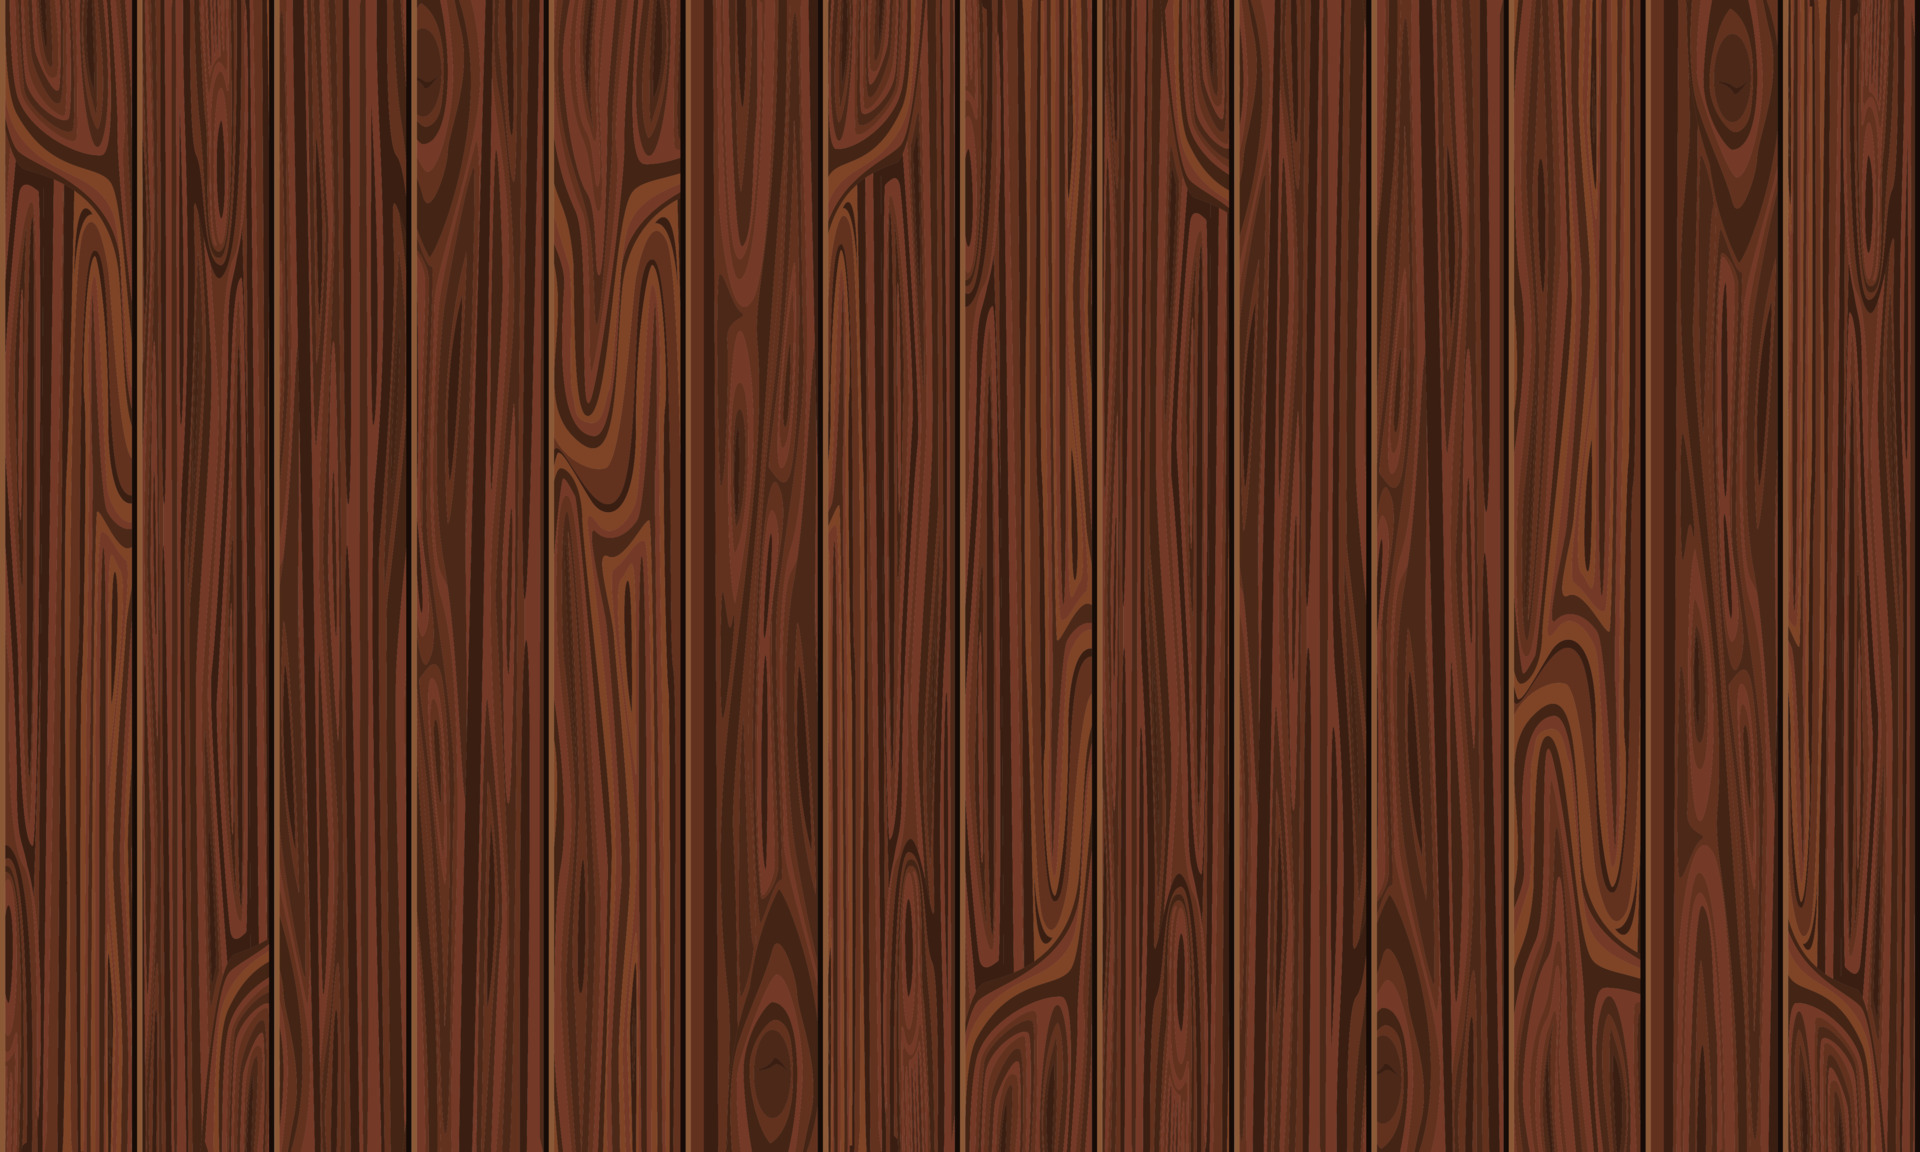 Gỗ (wood): Gỗ là một trong những vật liệu xây dựng truyền thống tuyệt vời nhất. Hãy ngắm nhìn hình ảnh để khám phá đường nét, màu sắc tự nhiên và sự đa dạng của gỗ. Độ trơn, sáng và nét của nó chắc chắn sẽ khiến bạn thích thú.